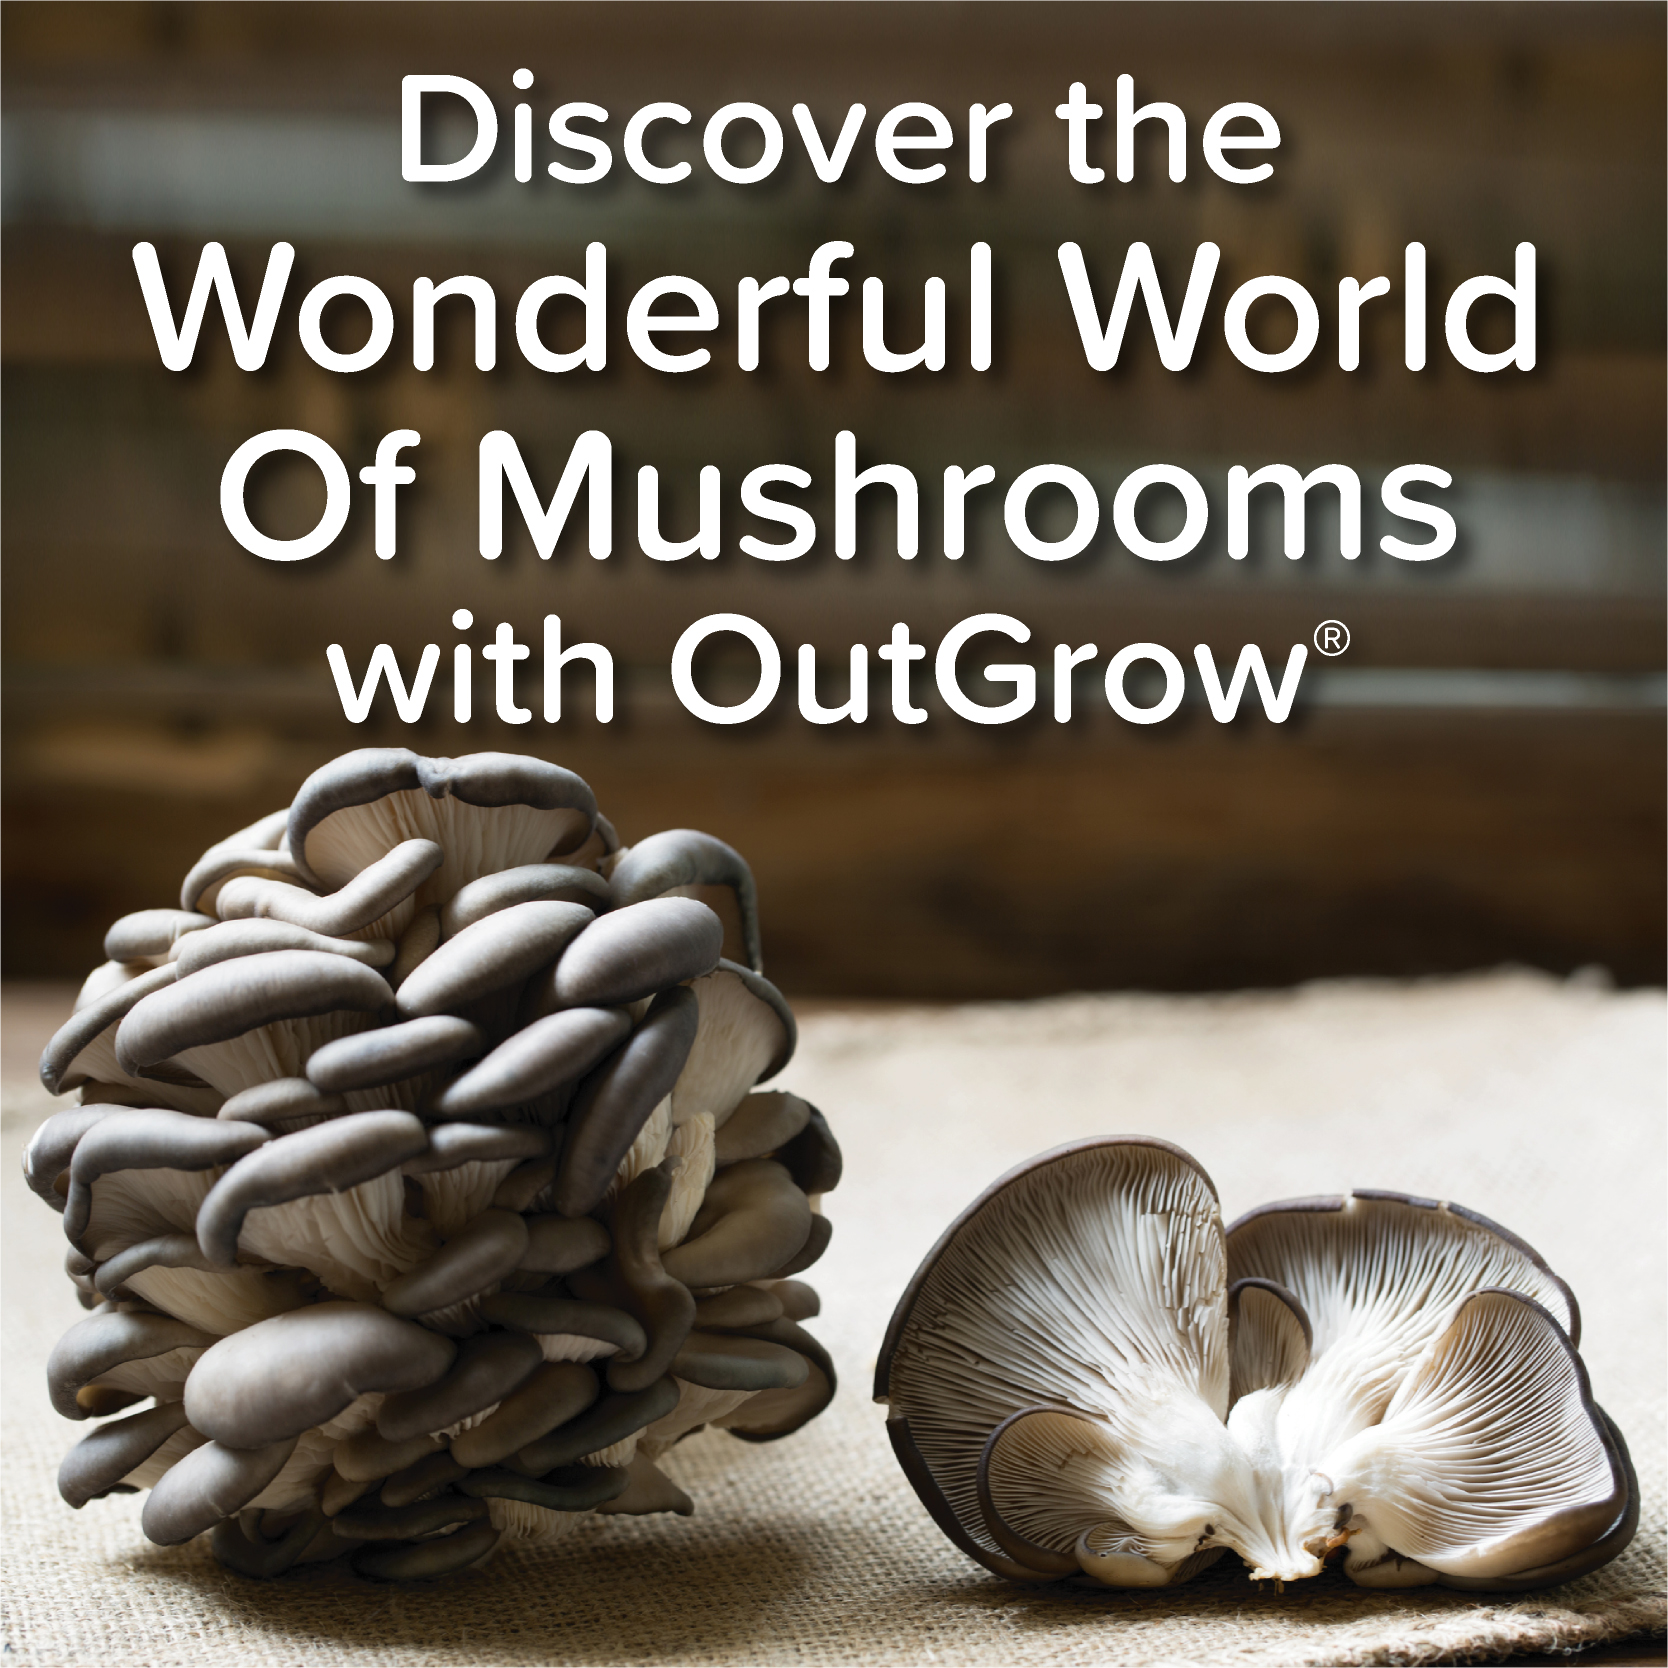 mobile mushroom growing supplies